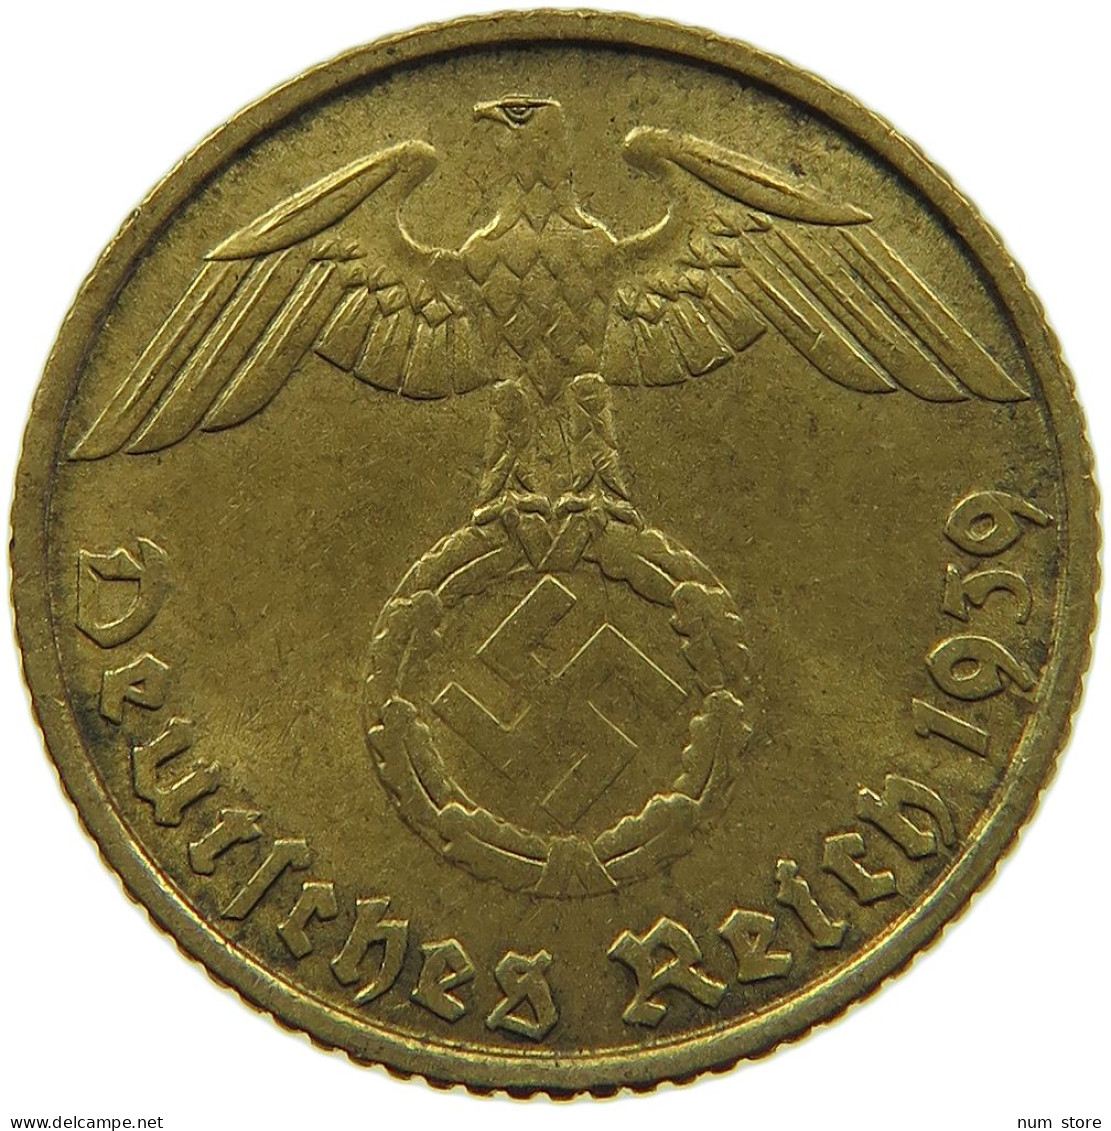 GERMANY 5 REICHSPFENNIG 1939 B #s091 0685 - 5 Reichspfennig